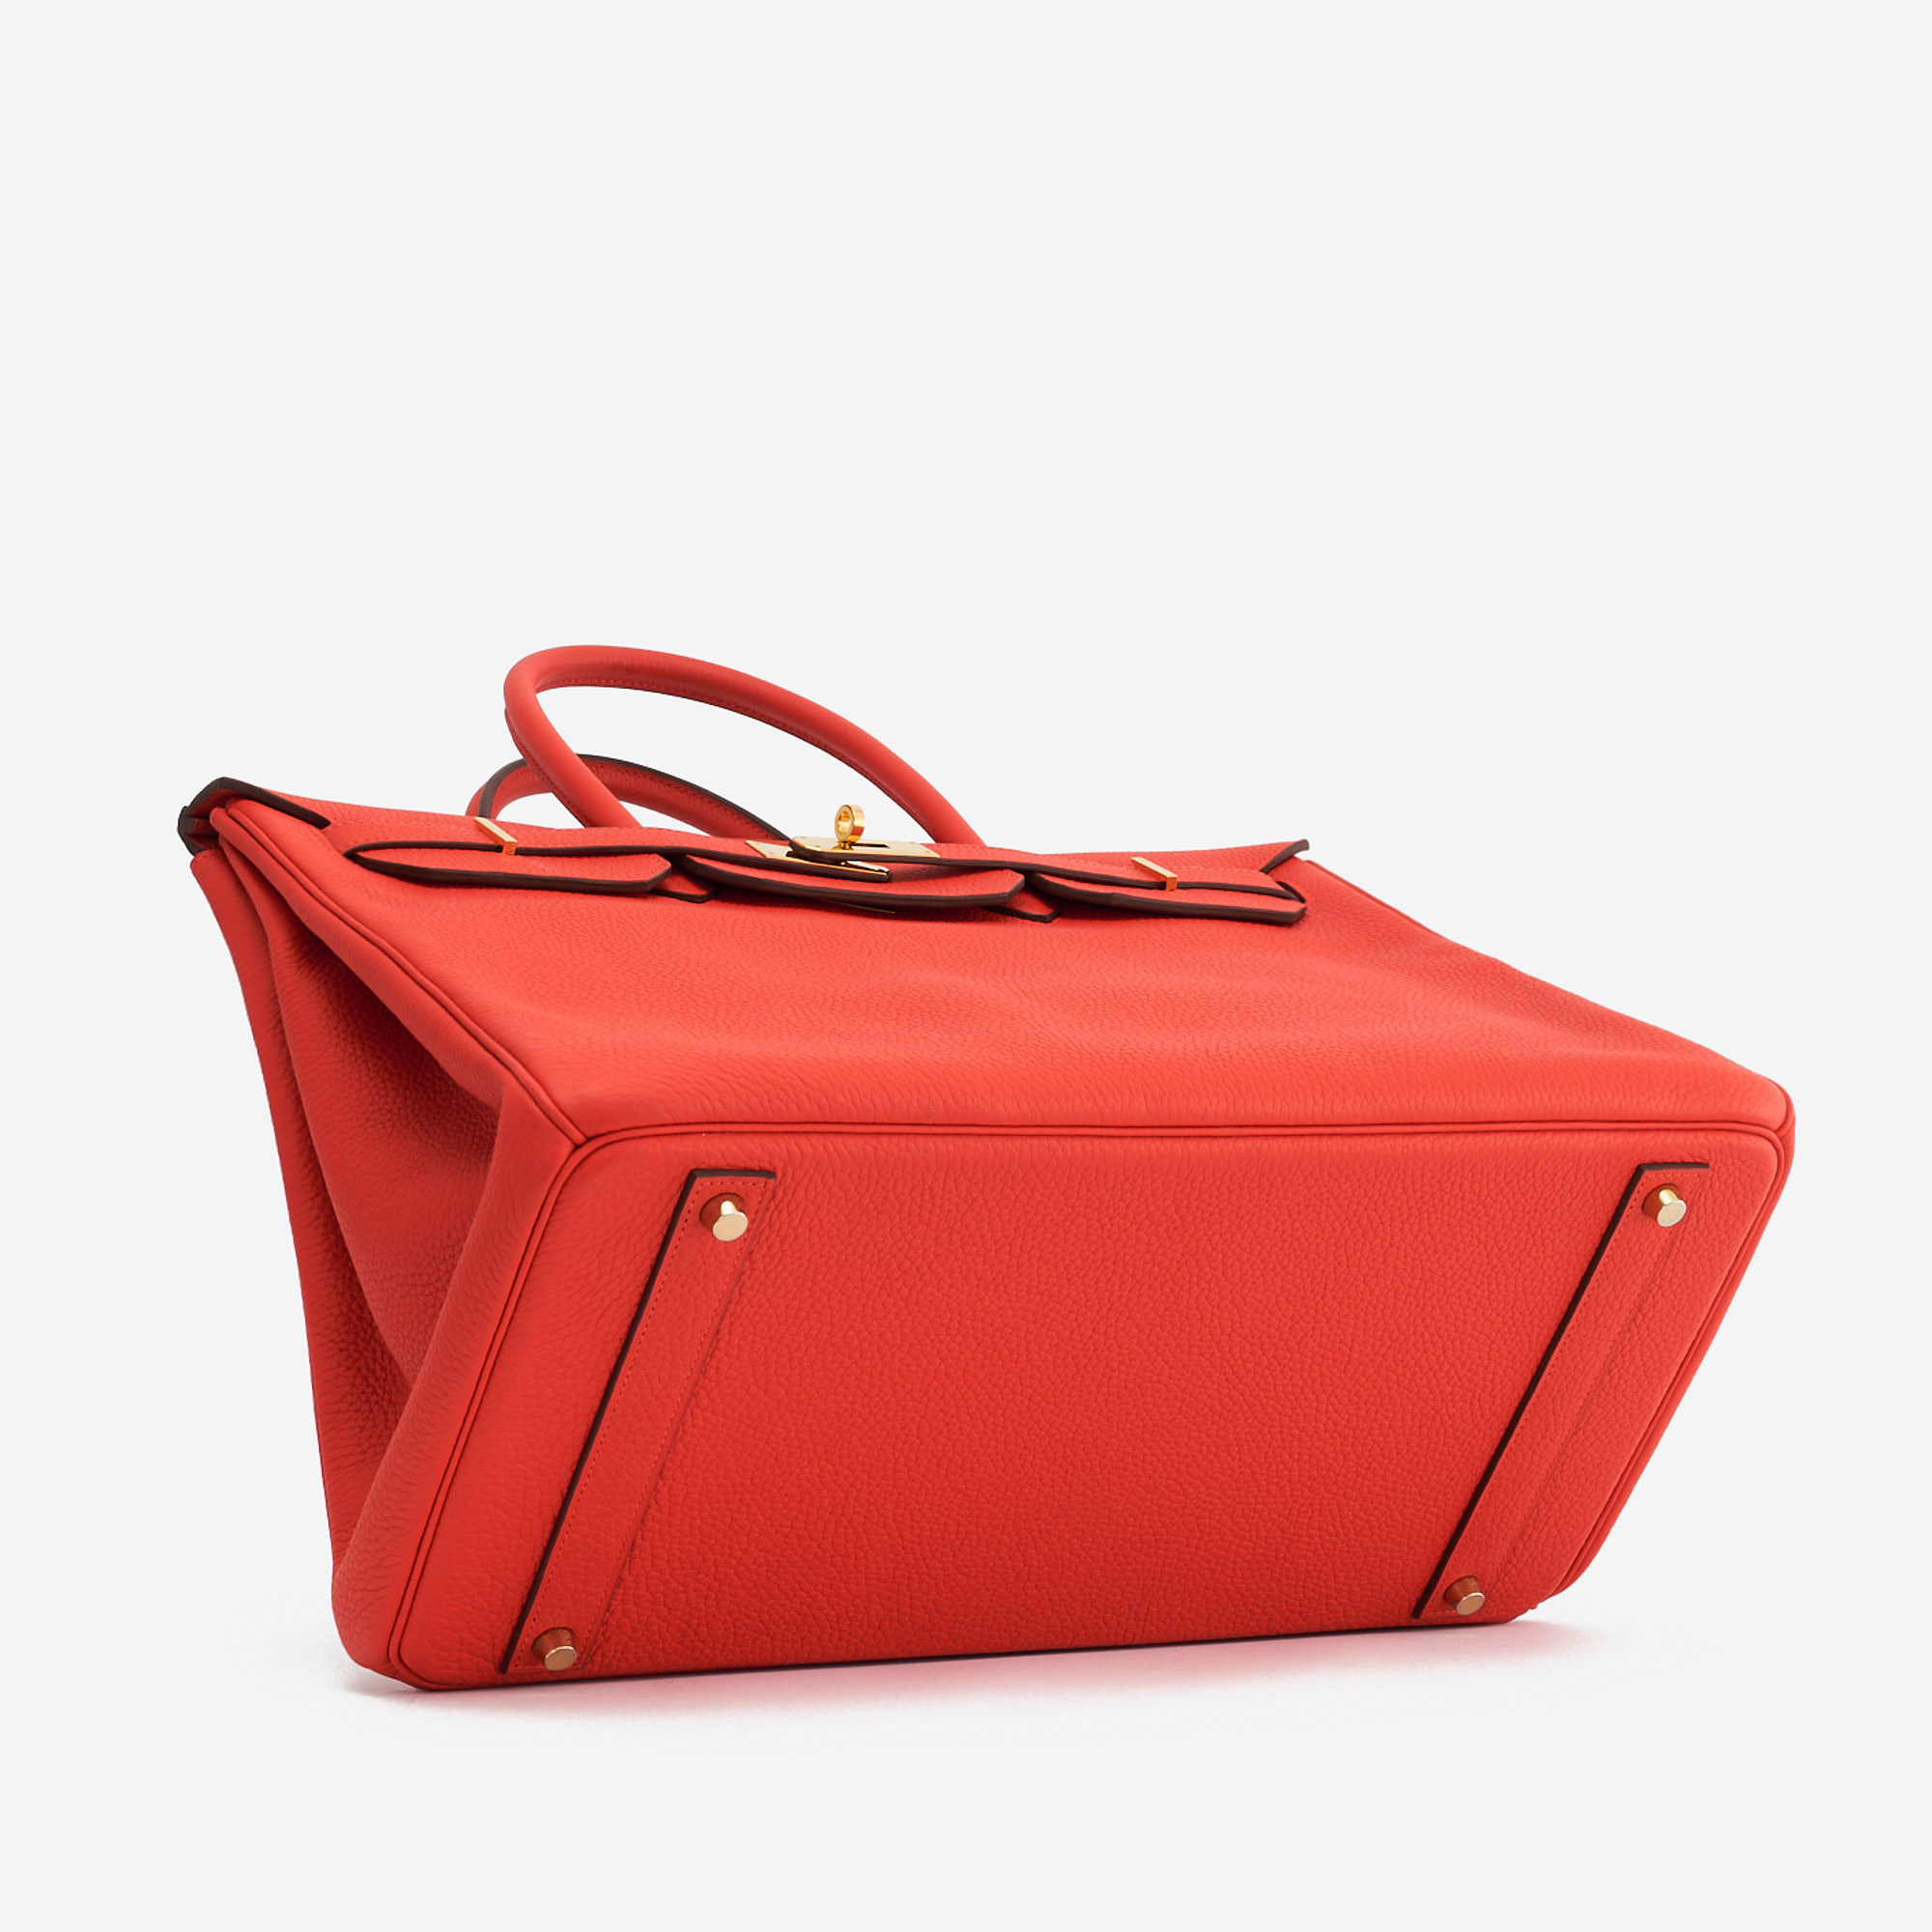 Sac Hermès Birkin 40 Togo Rouge Tomate Red d'occasion Vendre votre sac de créateur sur Saclab.com